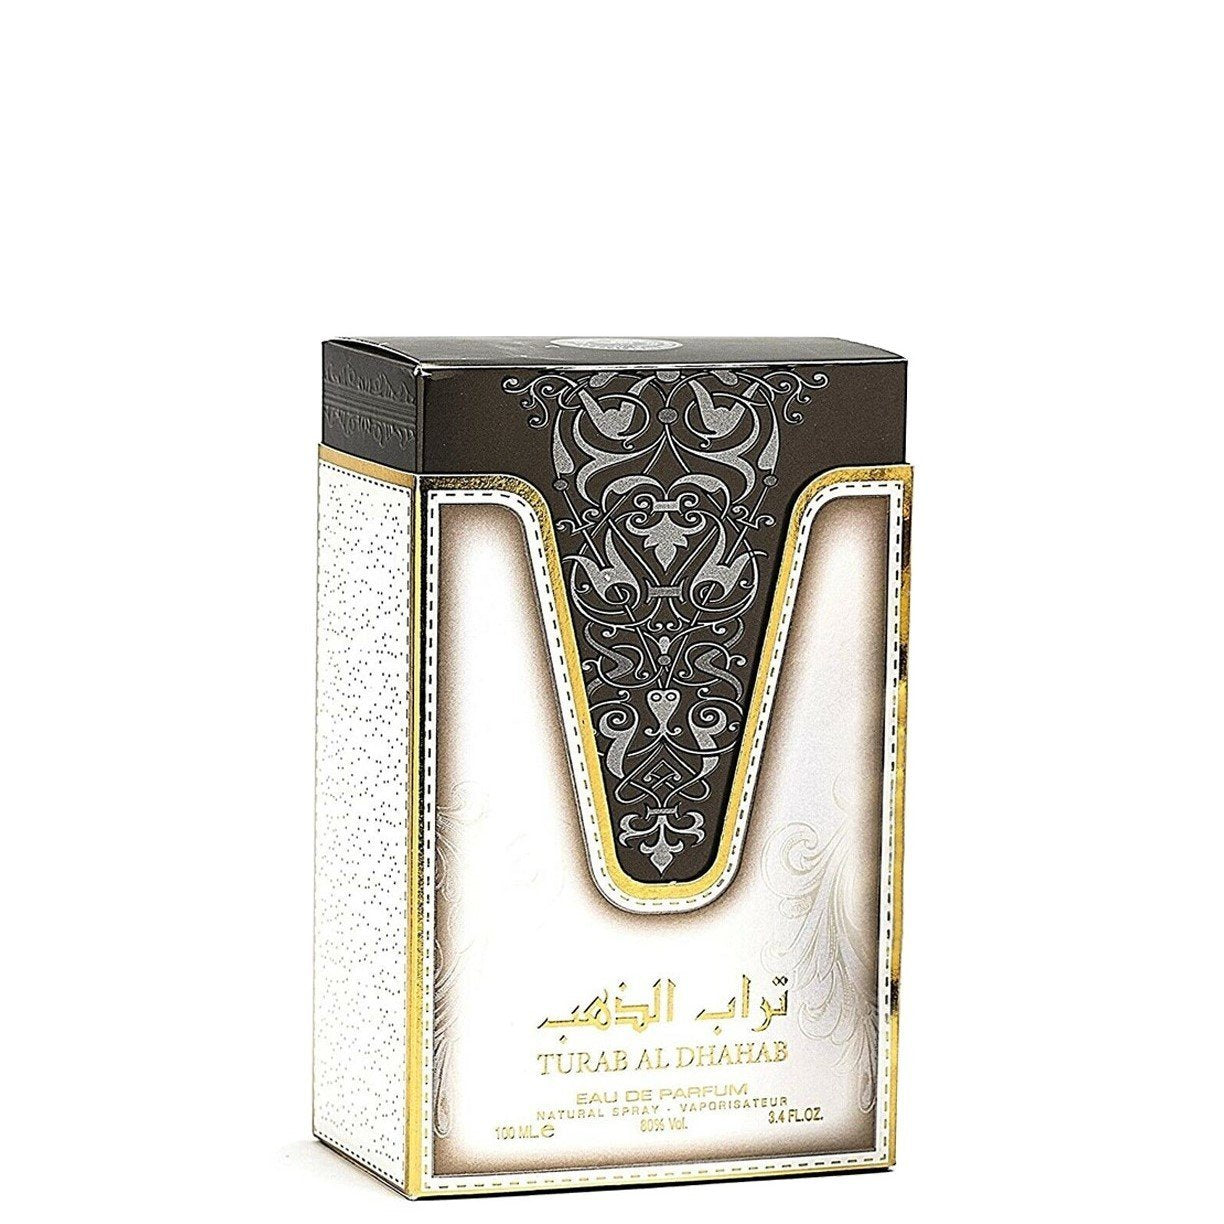 100 ml Woda Perfumowana Turab Al Dhahab Orientalny, słodko- ostry, piżmowy zapach dla mężczyzn